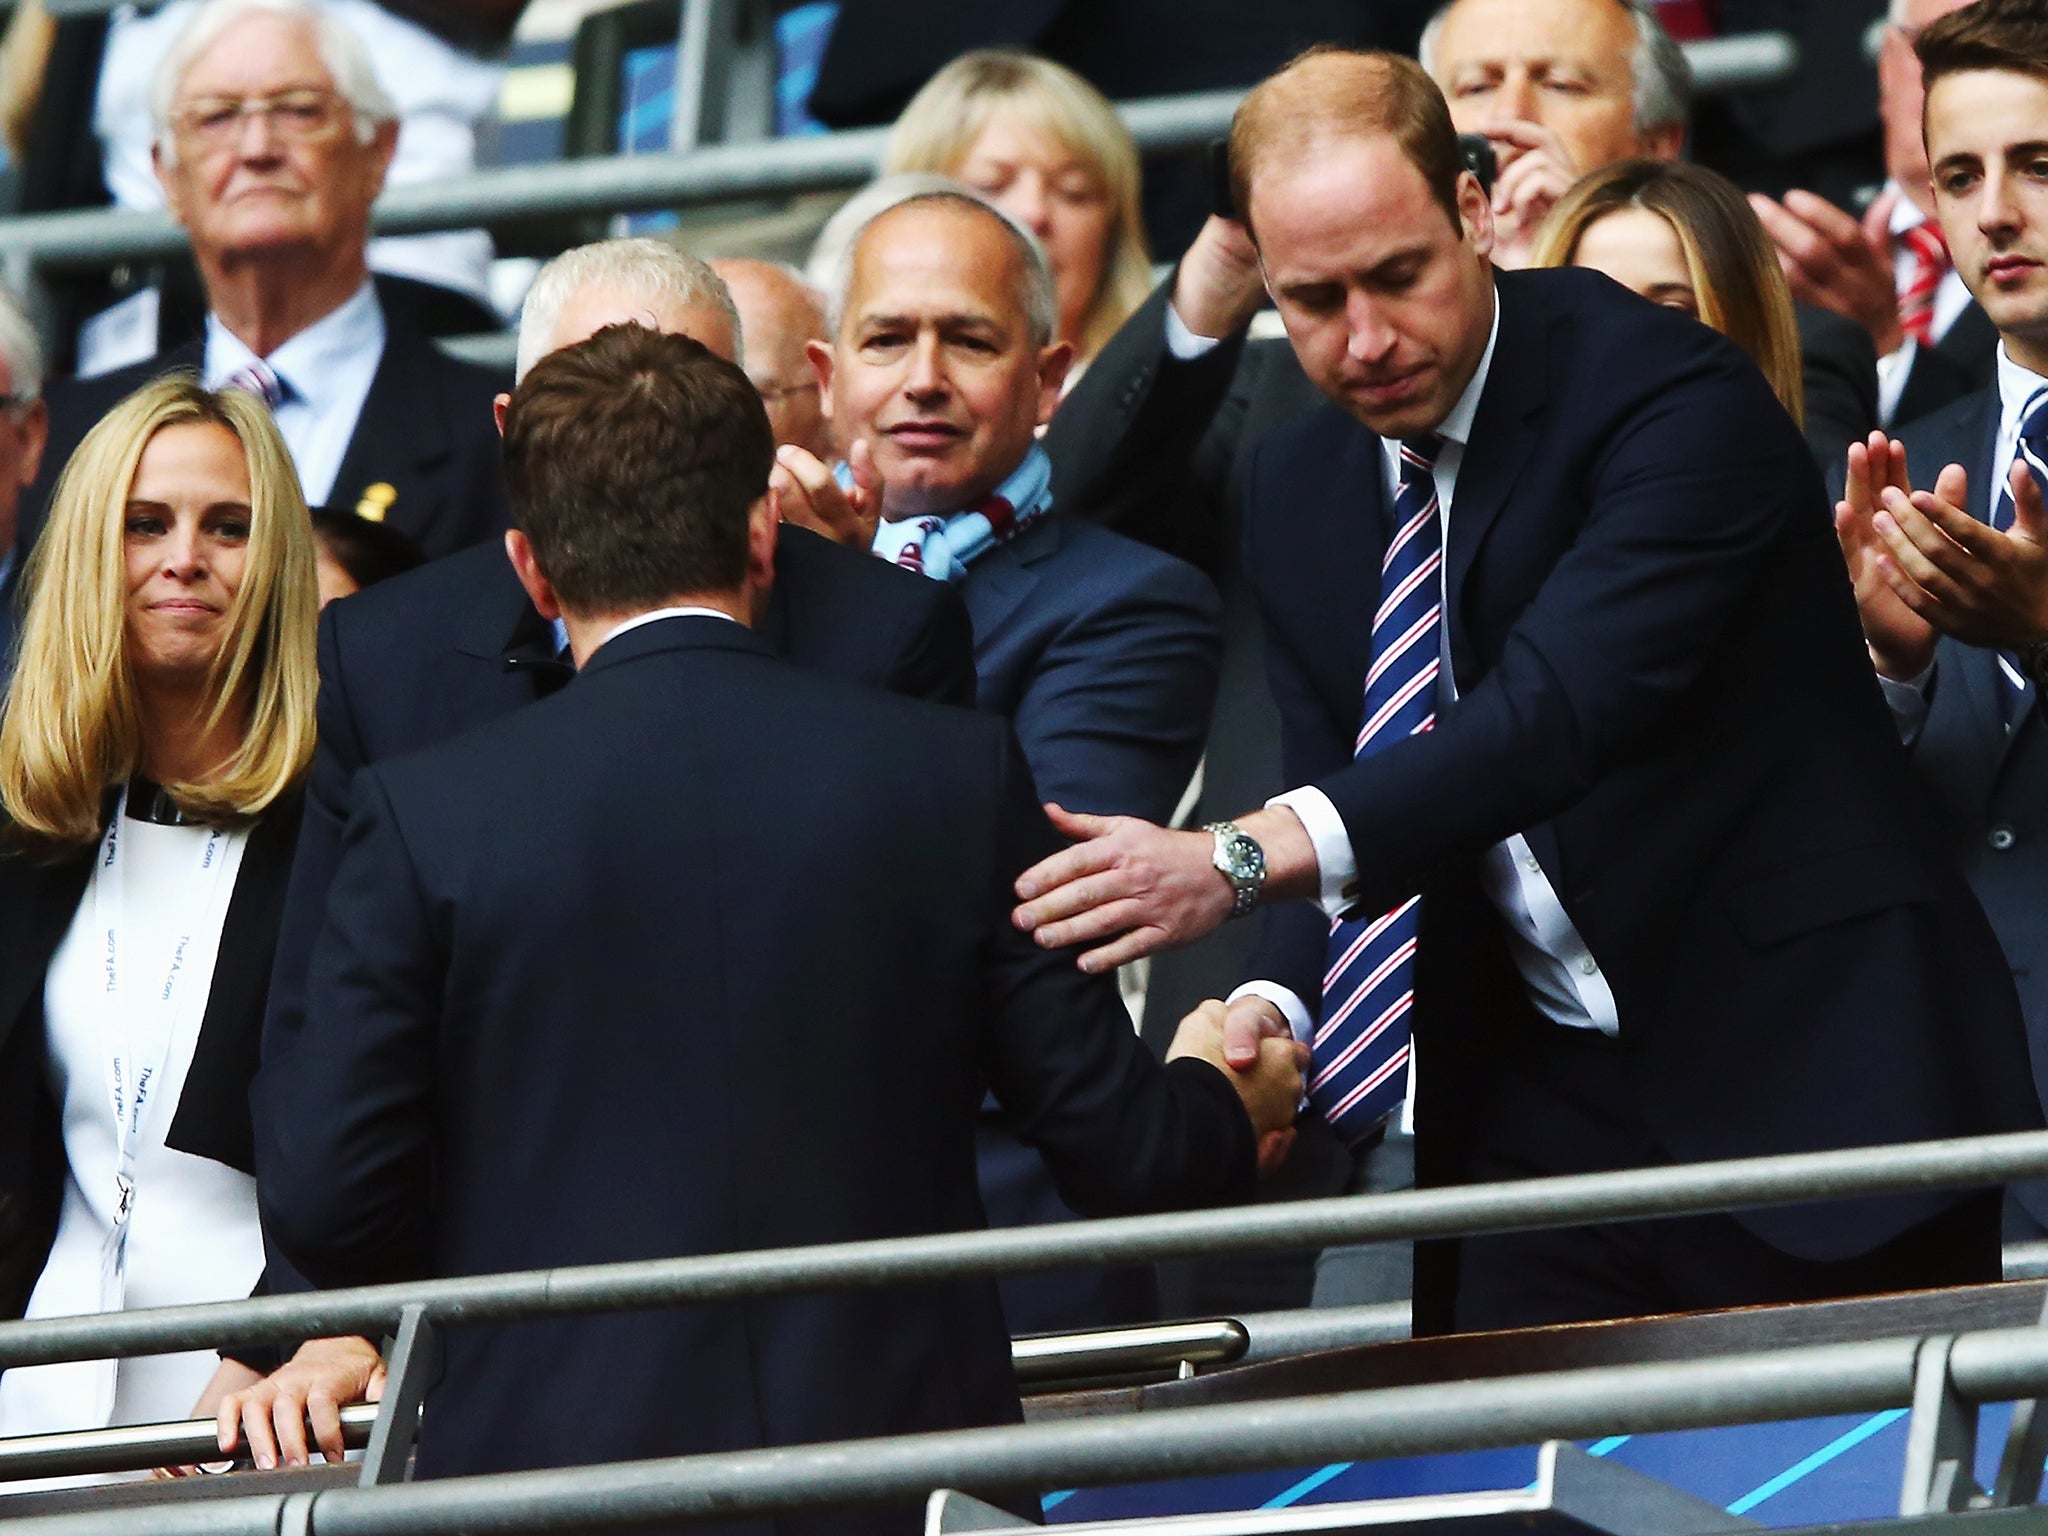 Prince William at a previous match, unhappy when Aston Villa lost